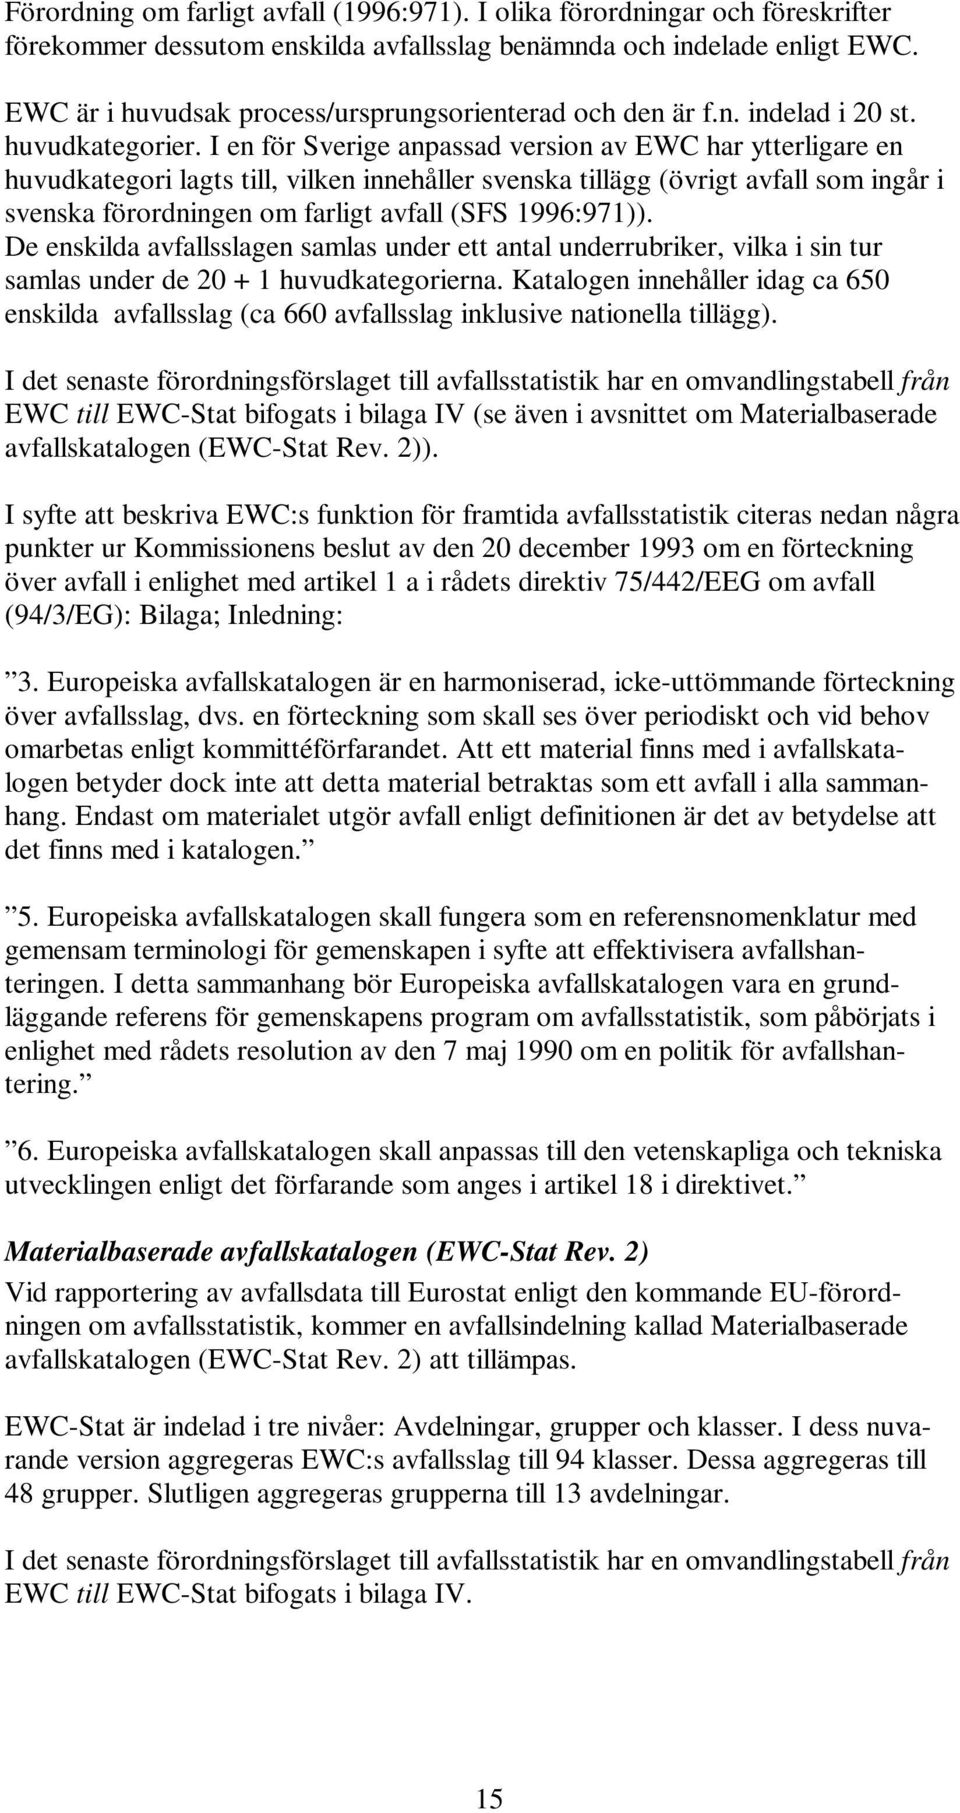 I en för Sverige anpassad version av EWC har ytterligare en huvudkategori lagts till, vilken innehåller svenska tillägg (övrigt avfall som ingår i svenska förordningen om farligt avfall (SFS